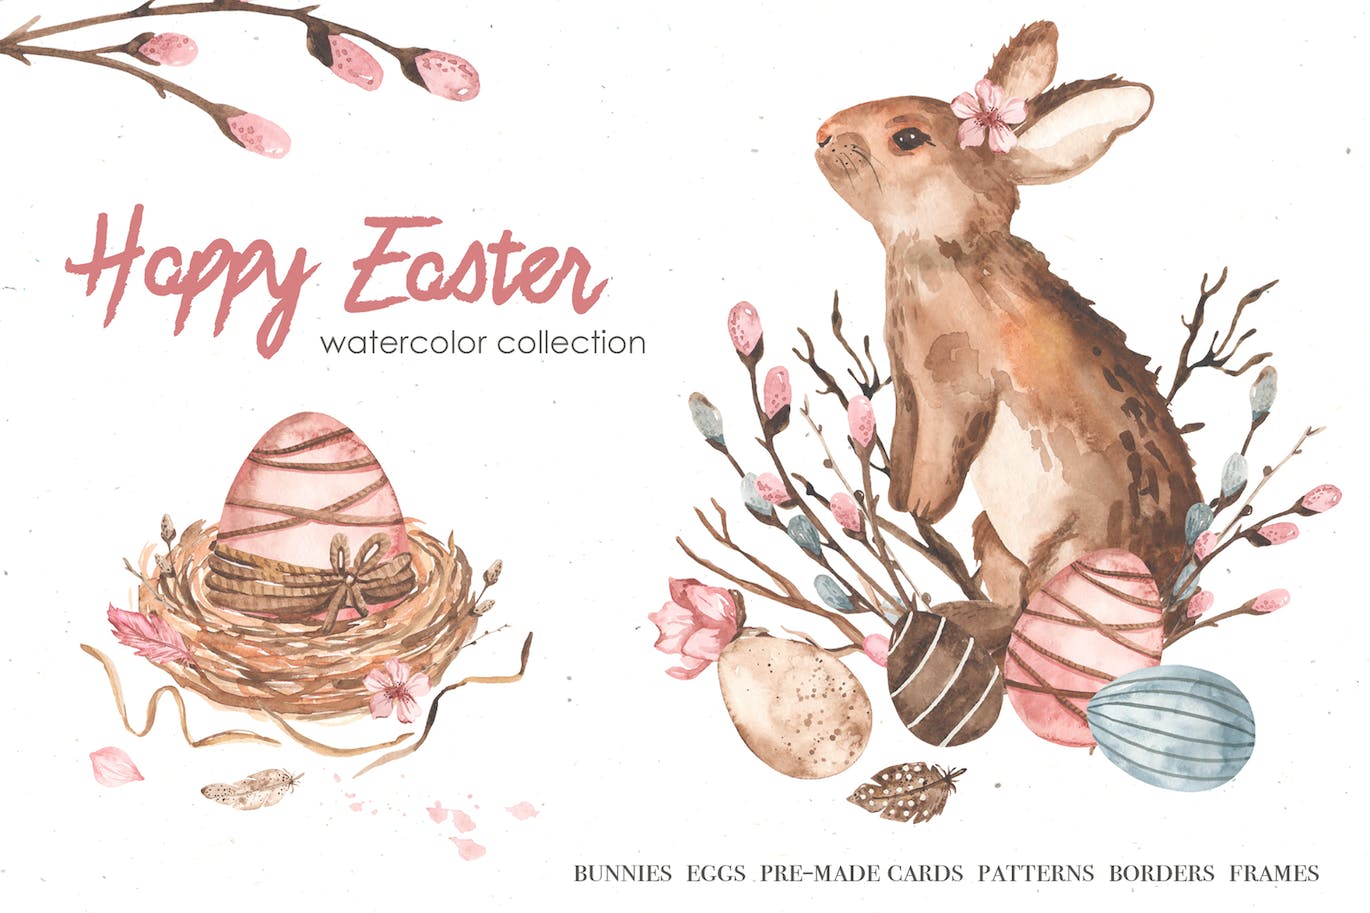 复活节快乐元素水彩画集 Happy Easter watercolor APP UI 第1张